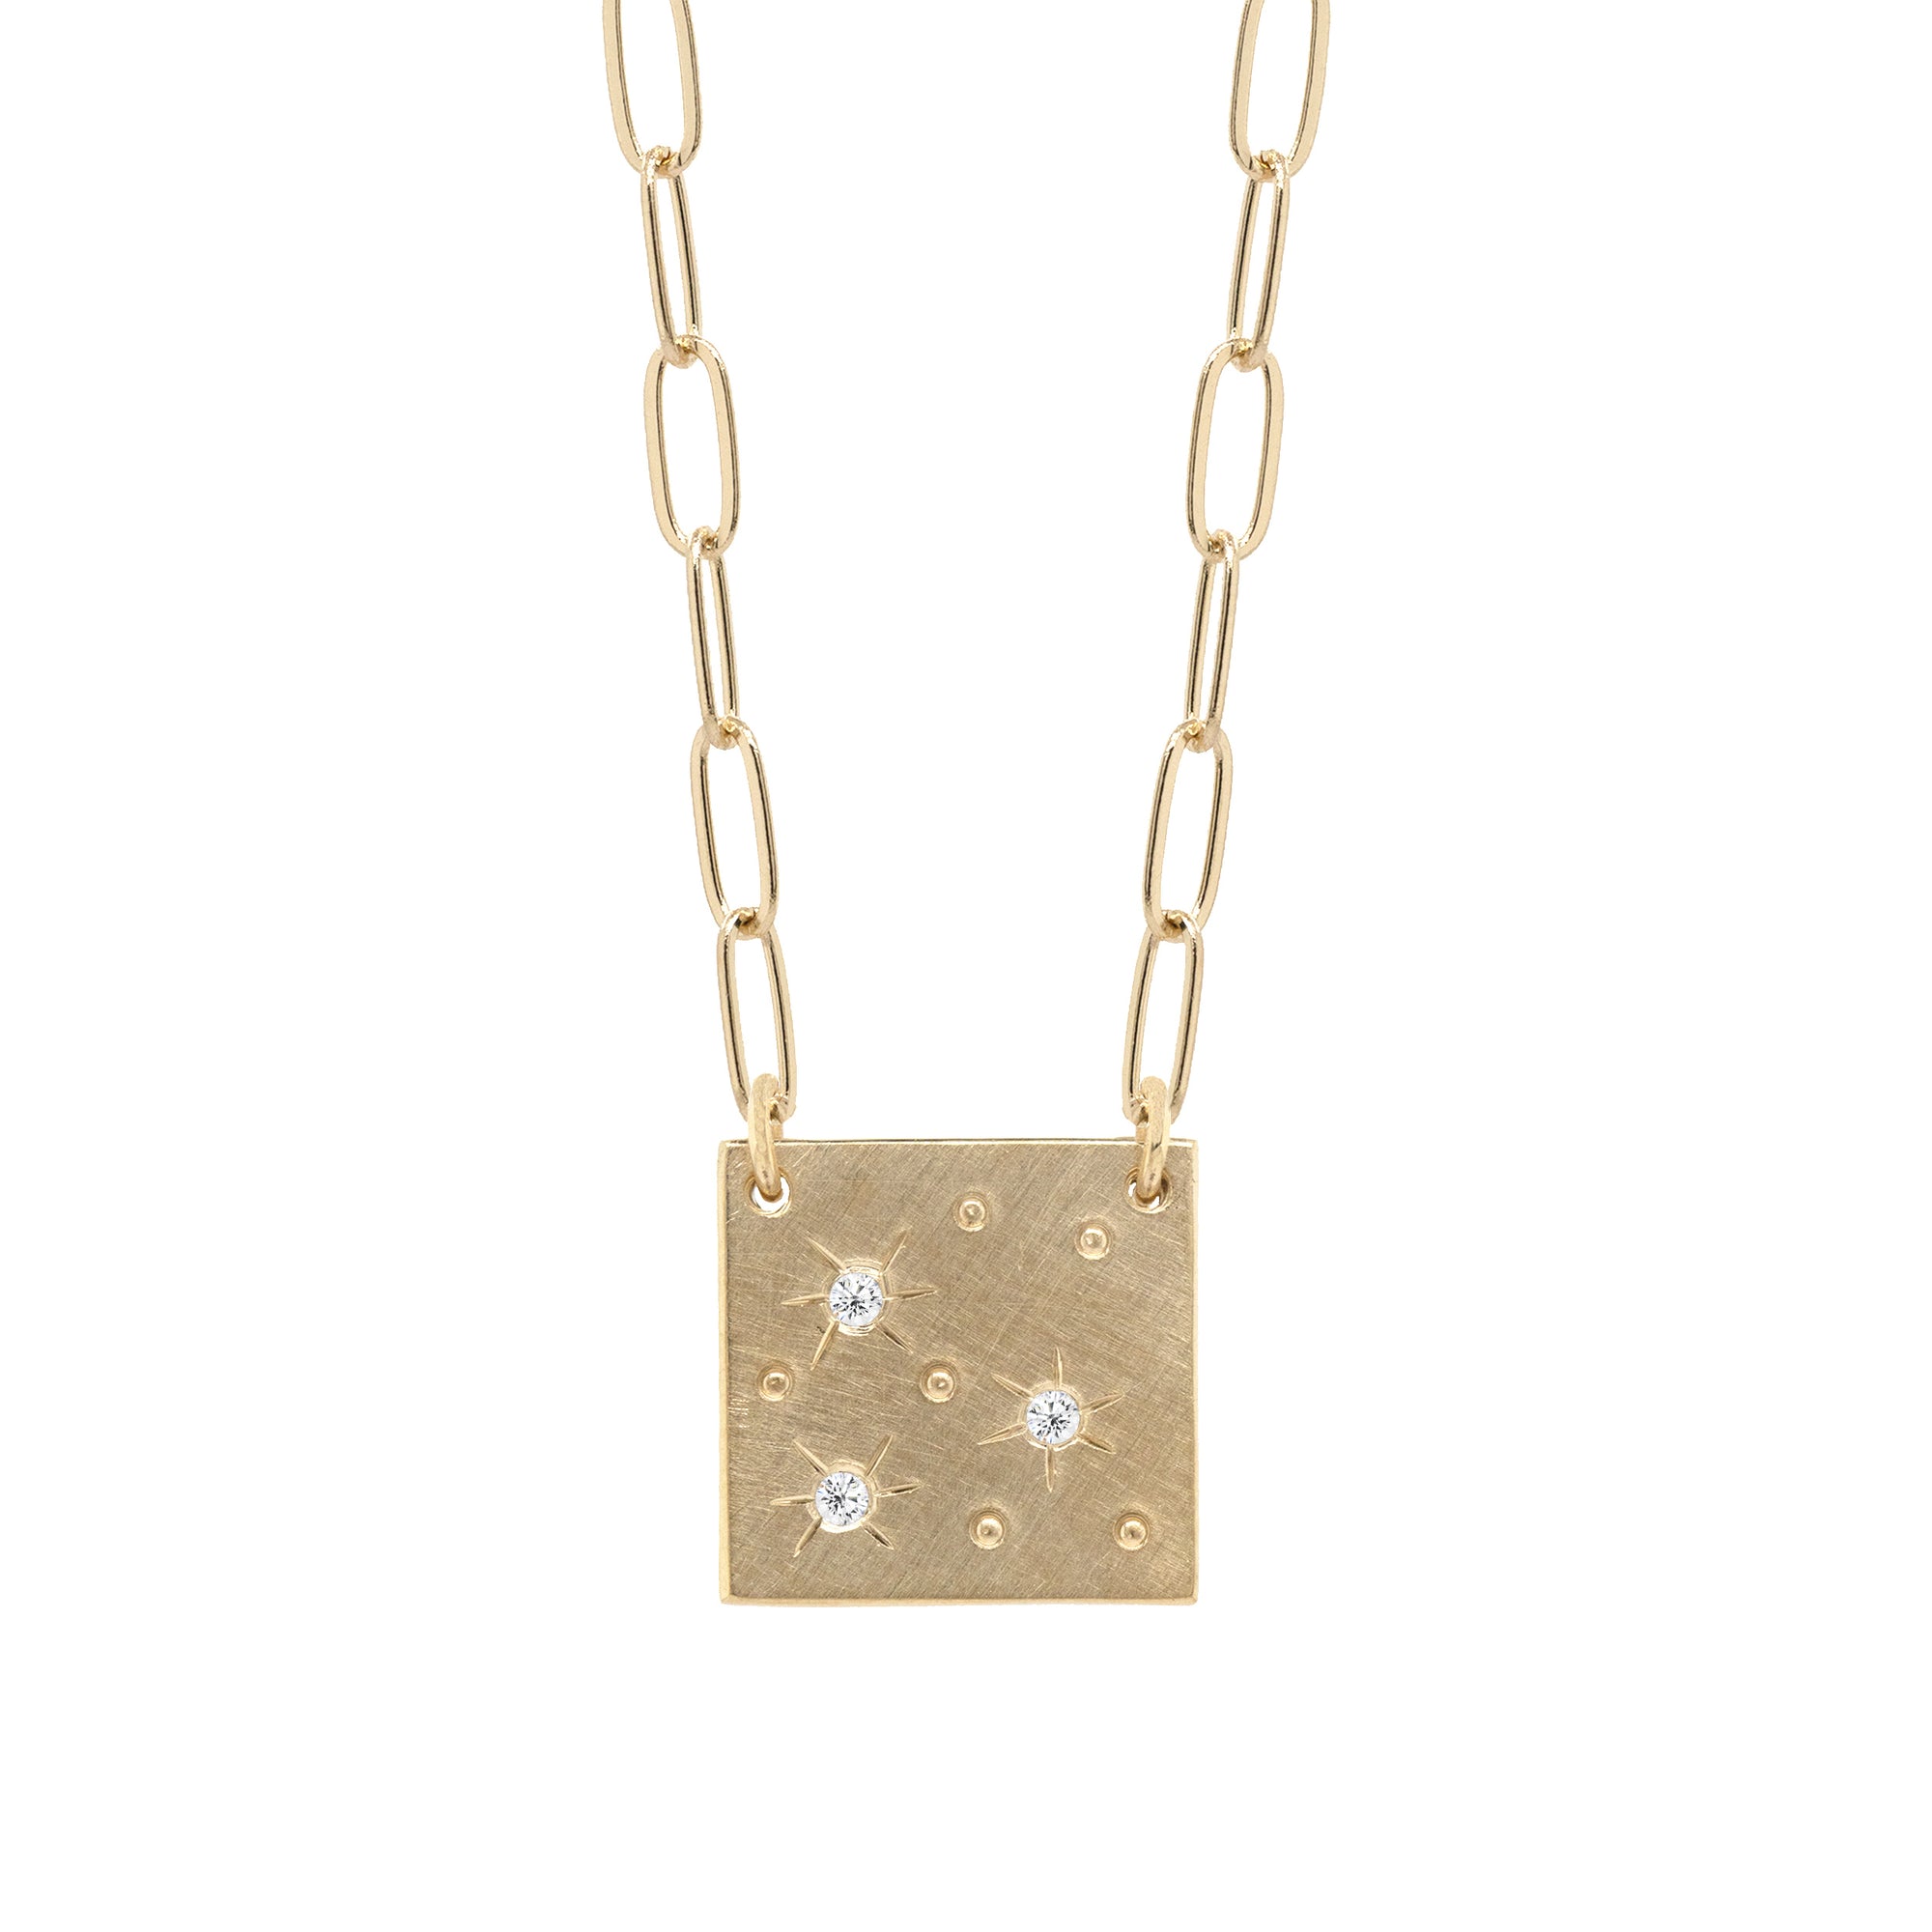 MORZ 14k Gold Diamond Necklace